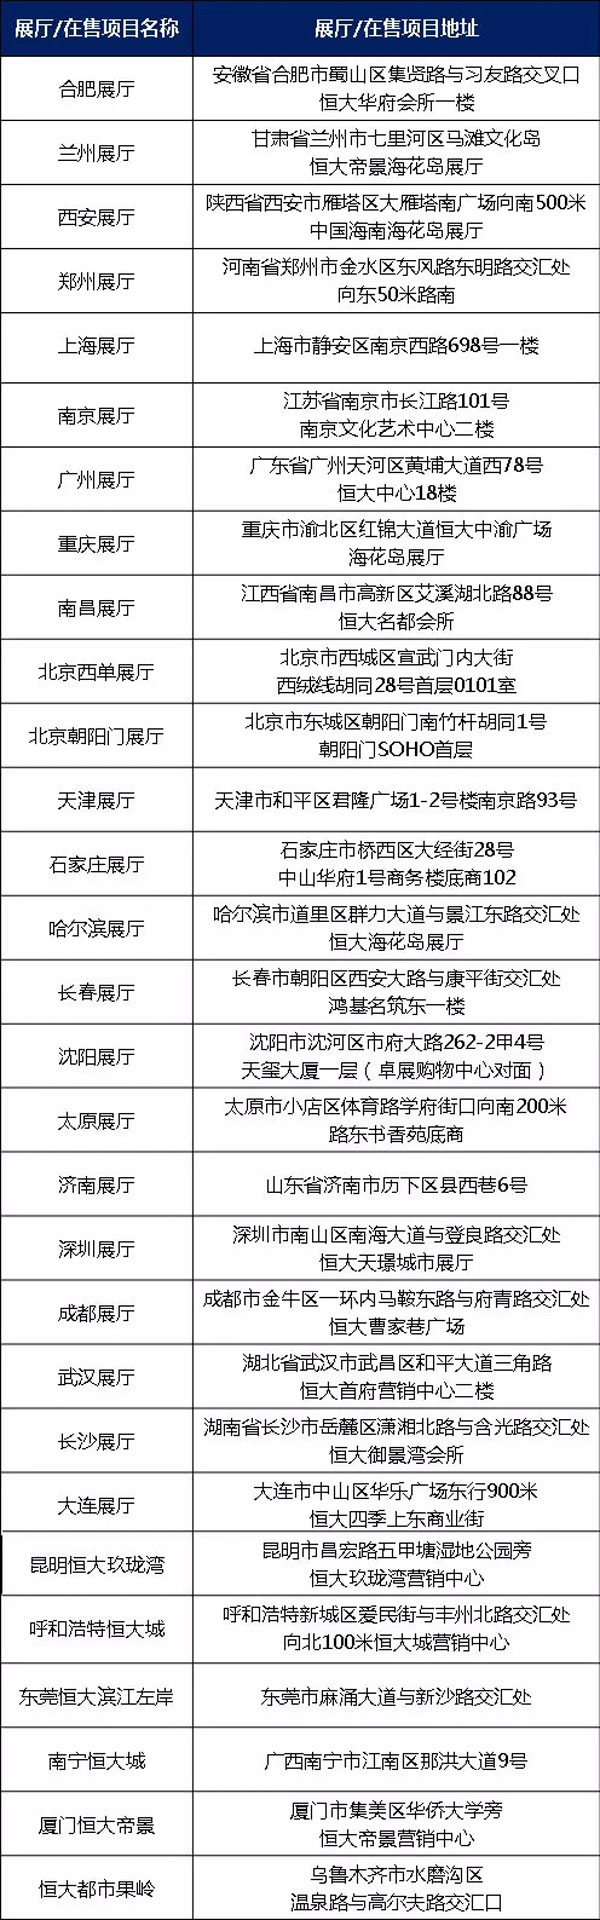 凉爽夏日 中国·贵阳冰雪避暑季活动预告来袭-中国网地产